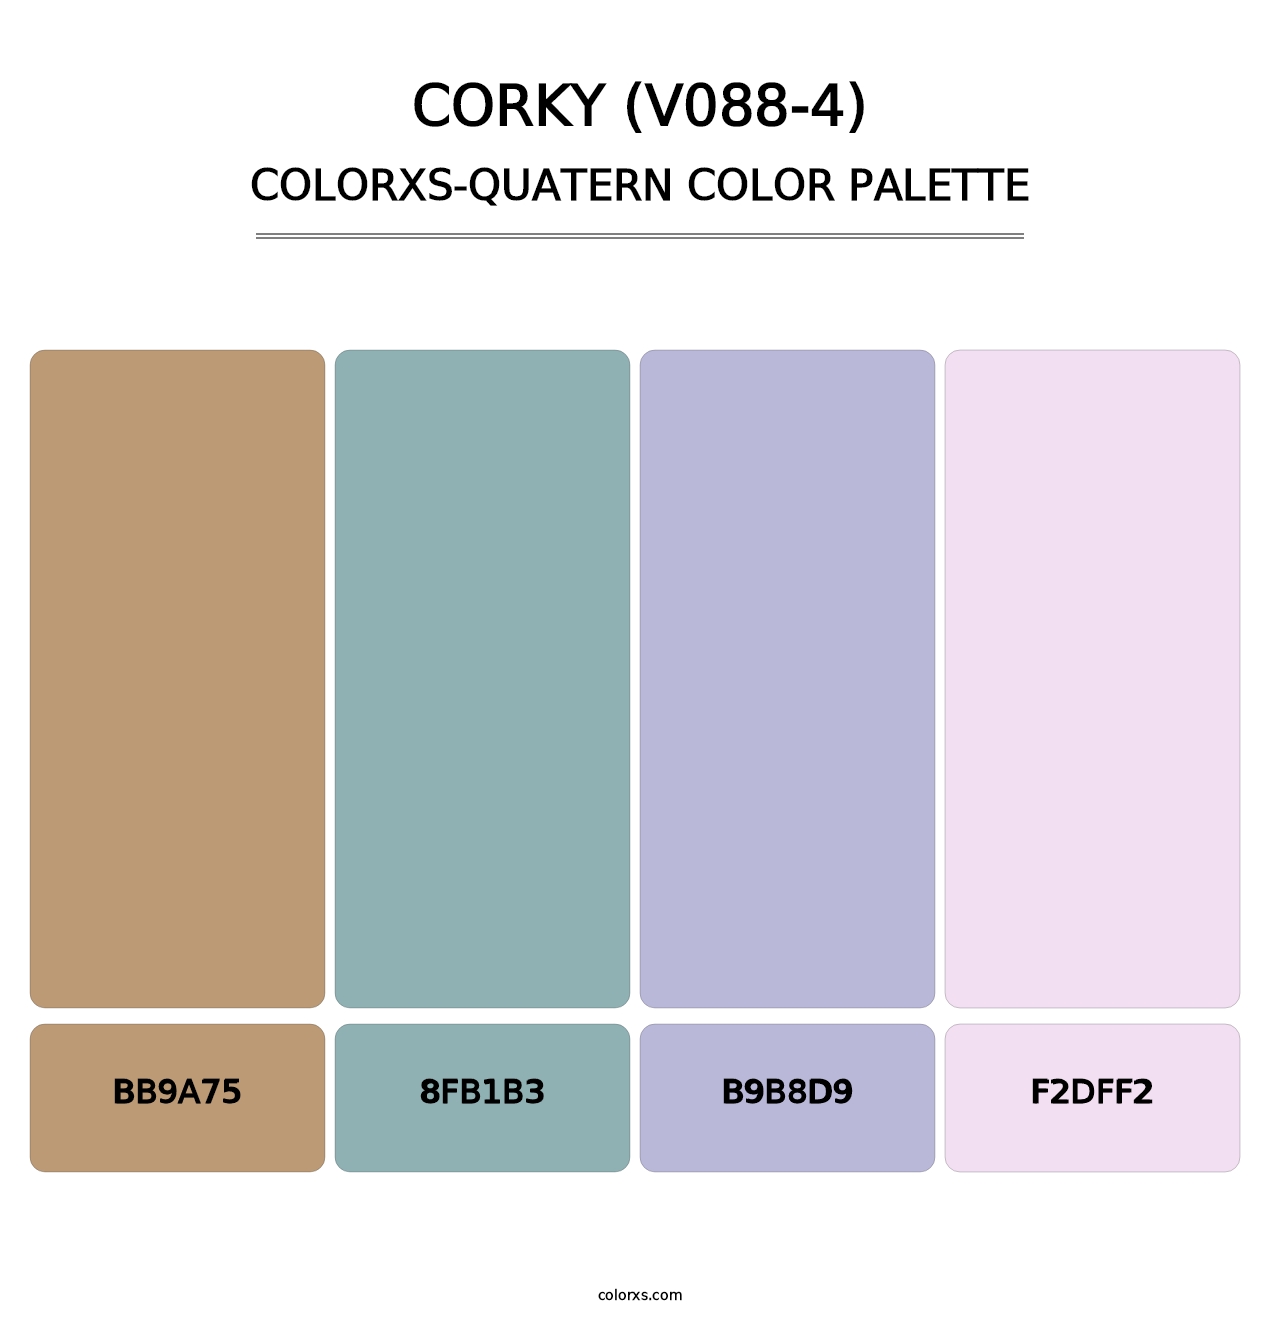 Corky (V088-4) - Colorxs Quatern Palette